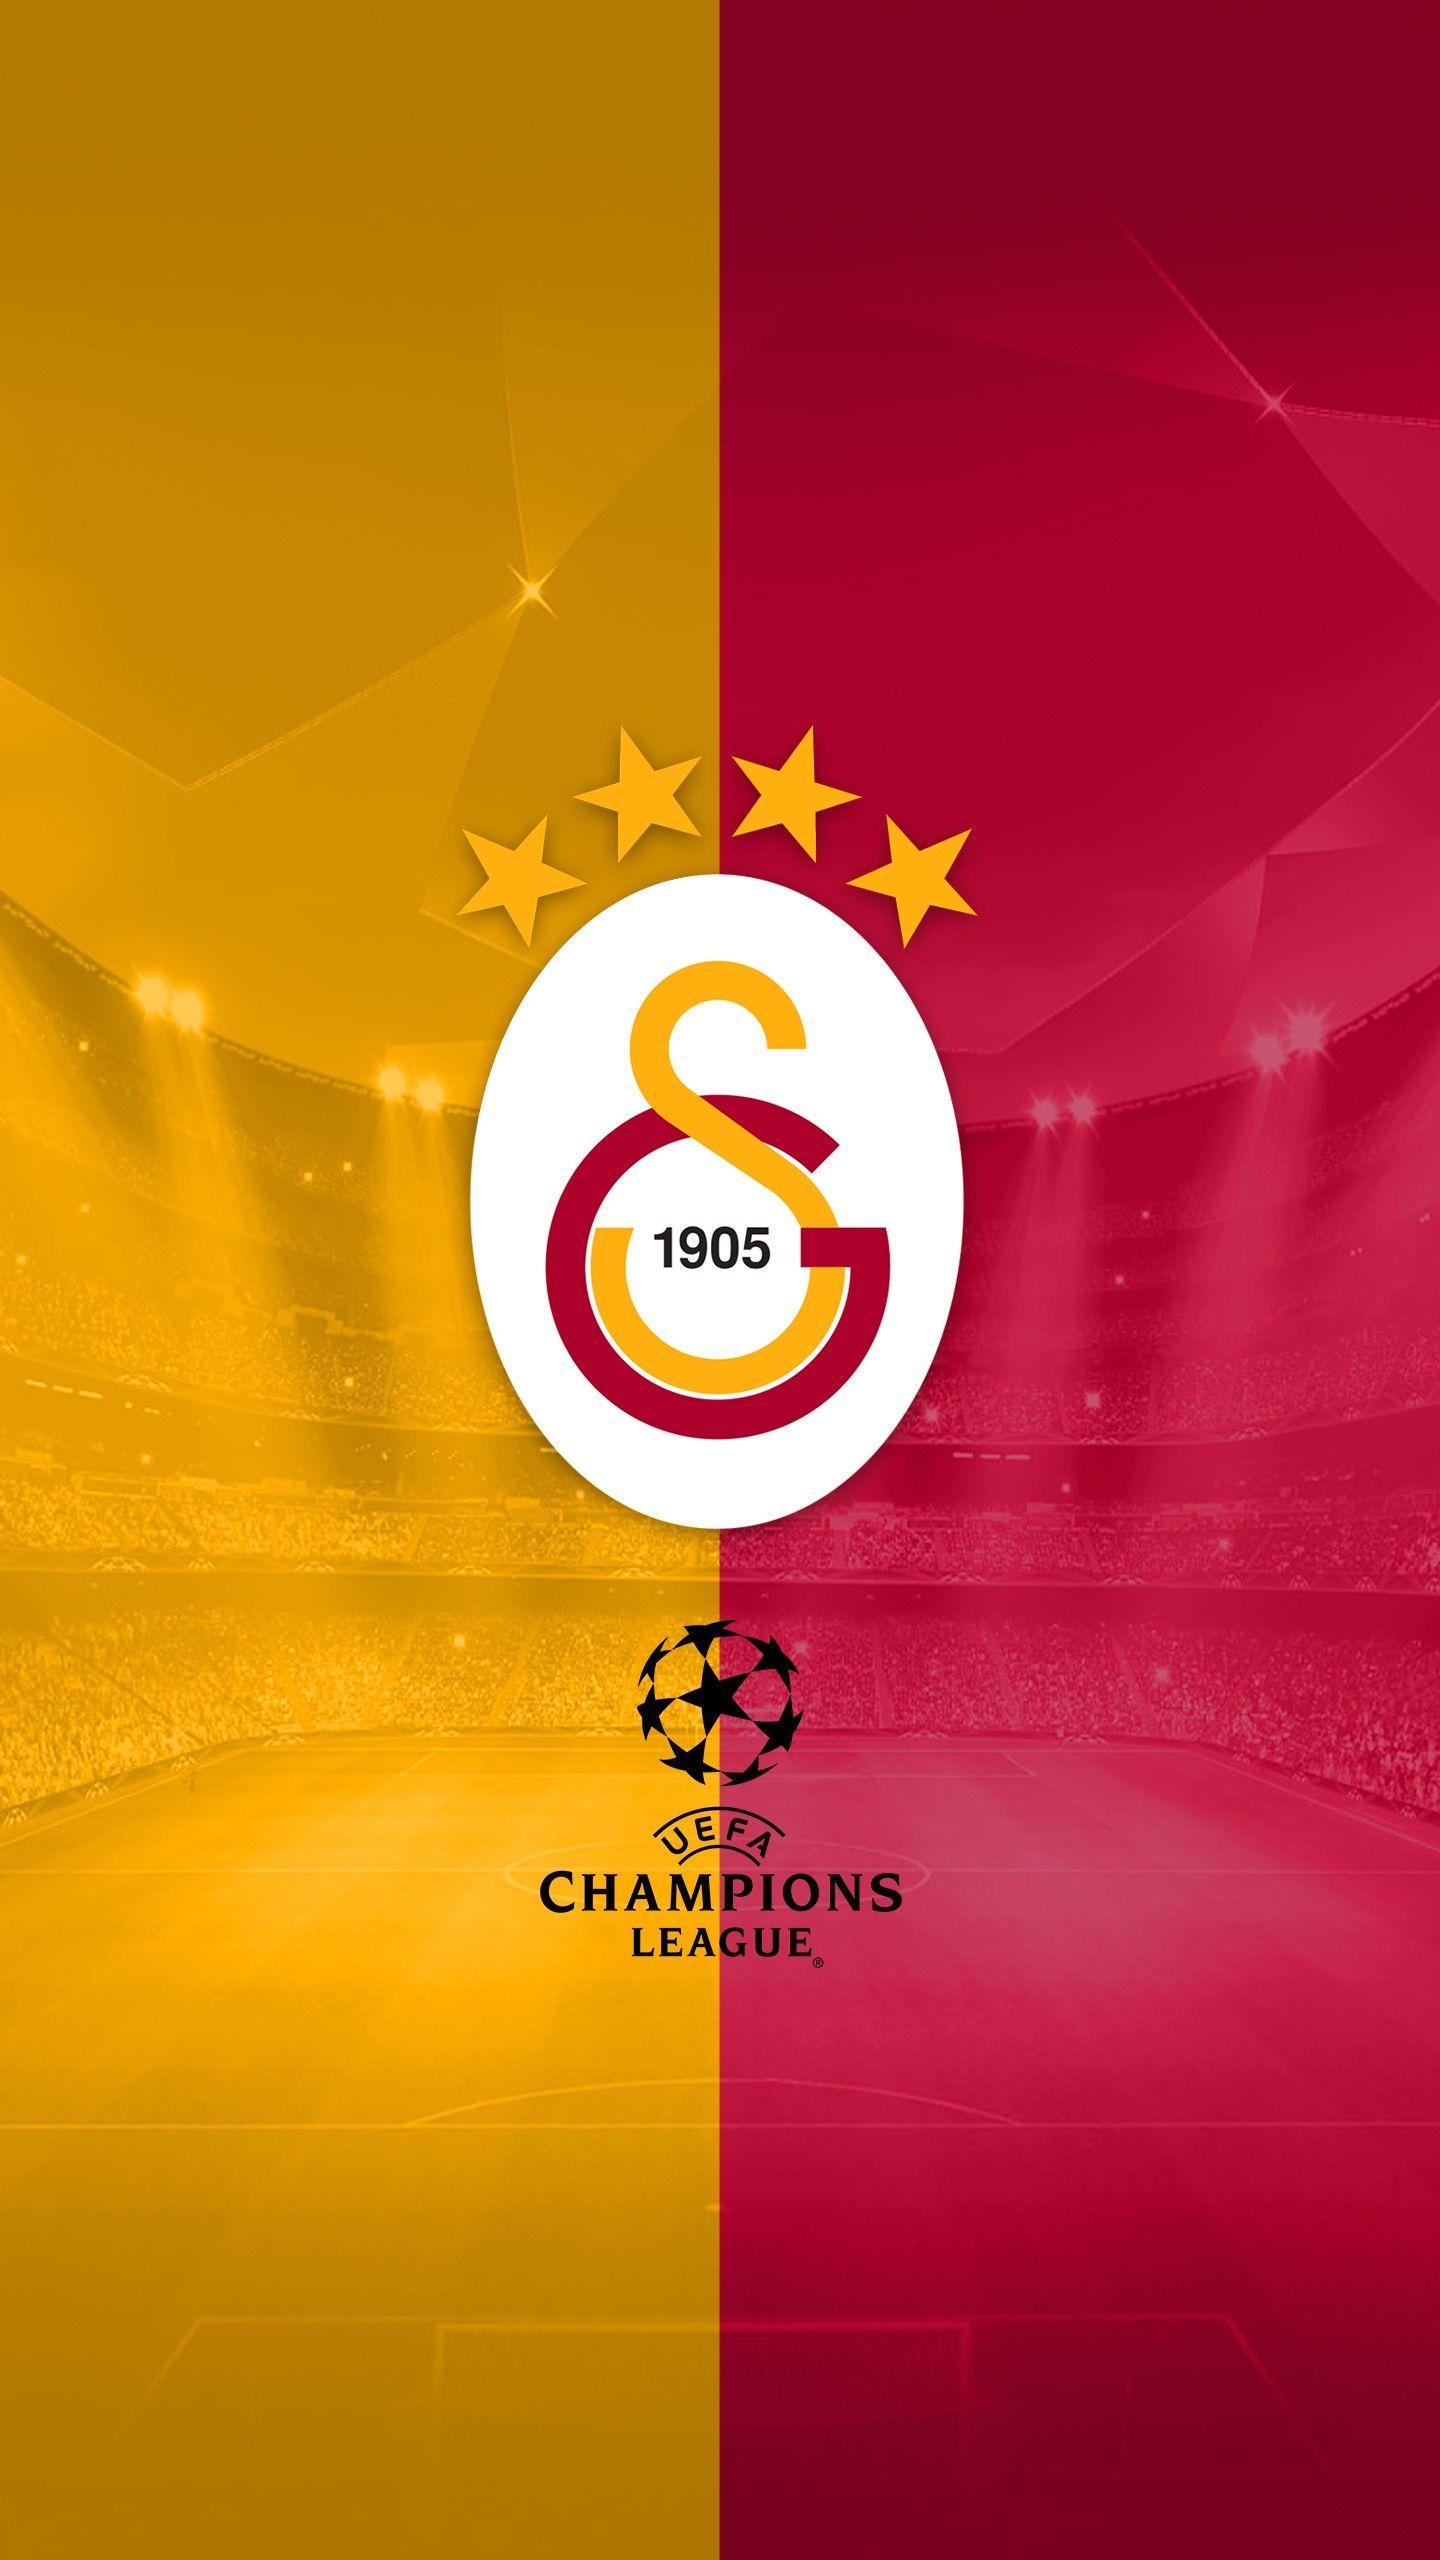 Galatasaray Logo - Wallpaper : illustration, text, logo, circle, soccer, Galatasaray ...